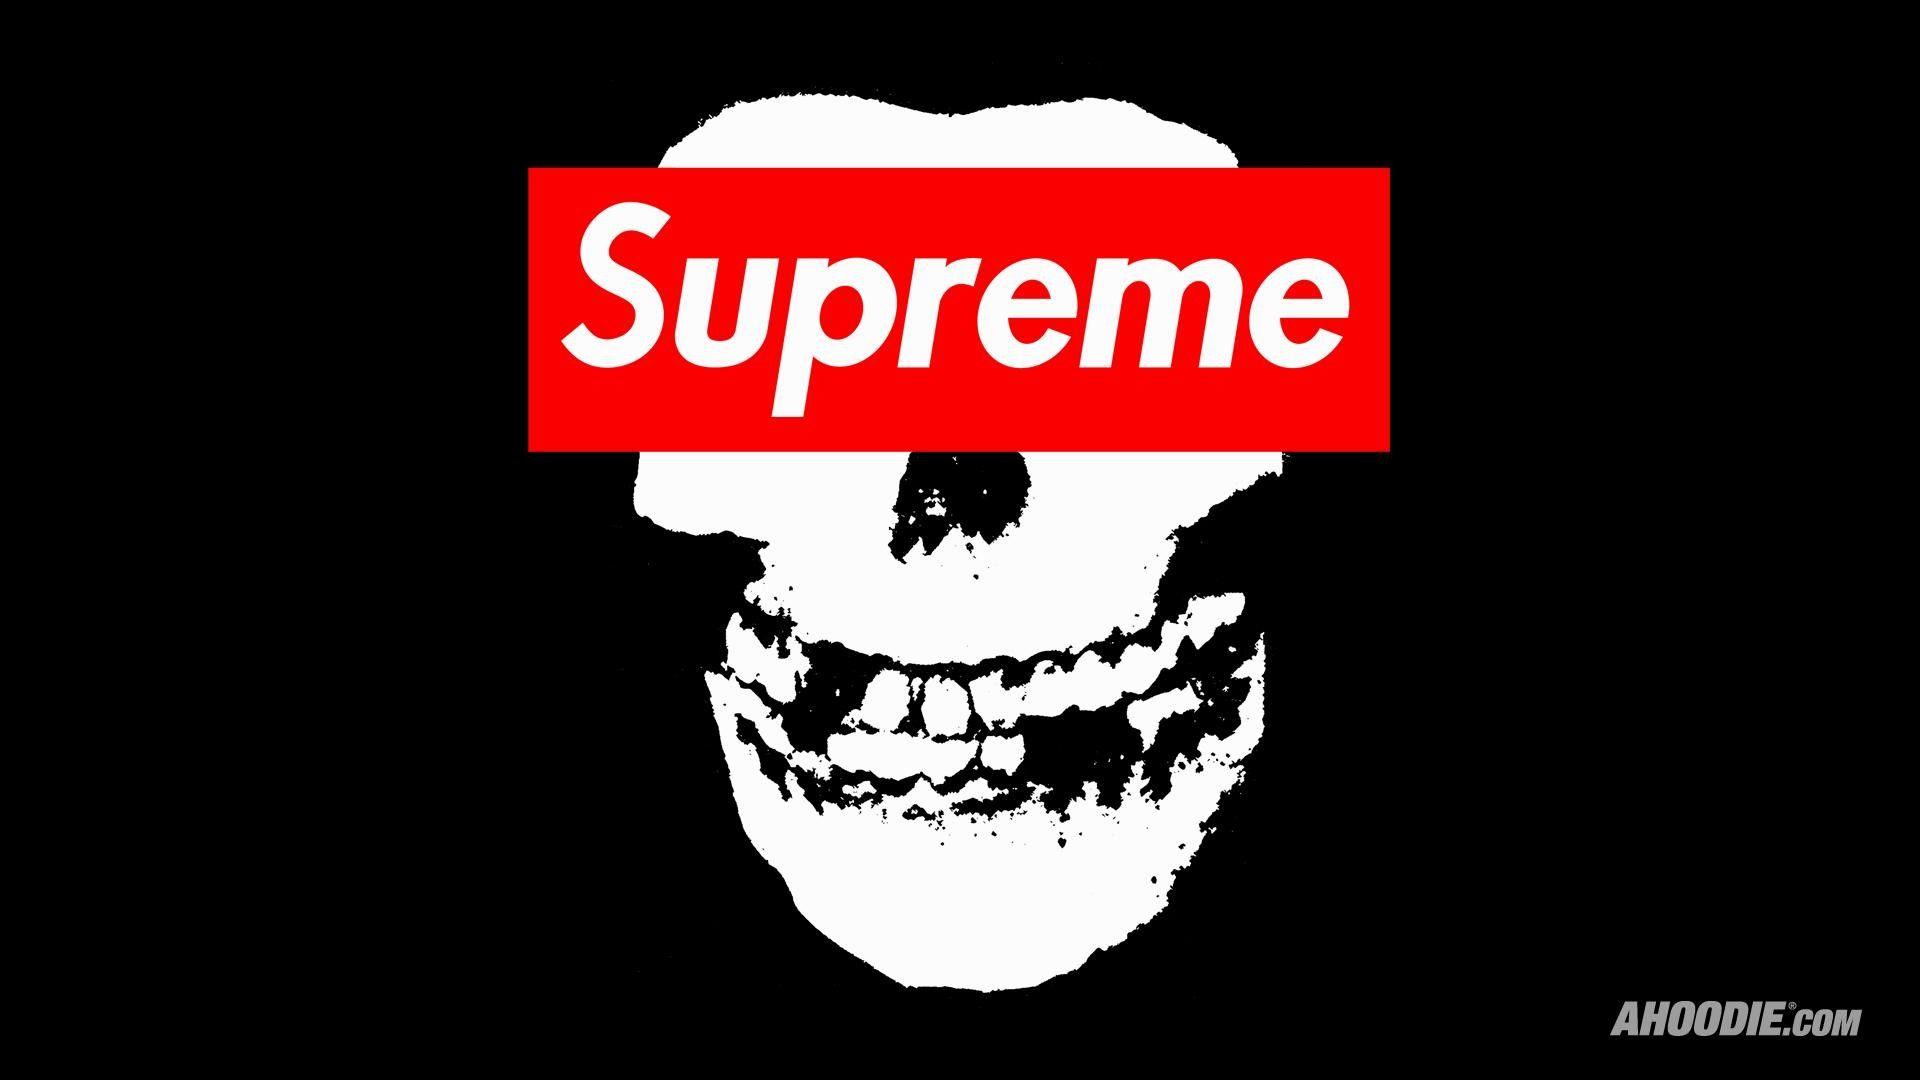 Download Supreme Logo against Black Background Wallpaper